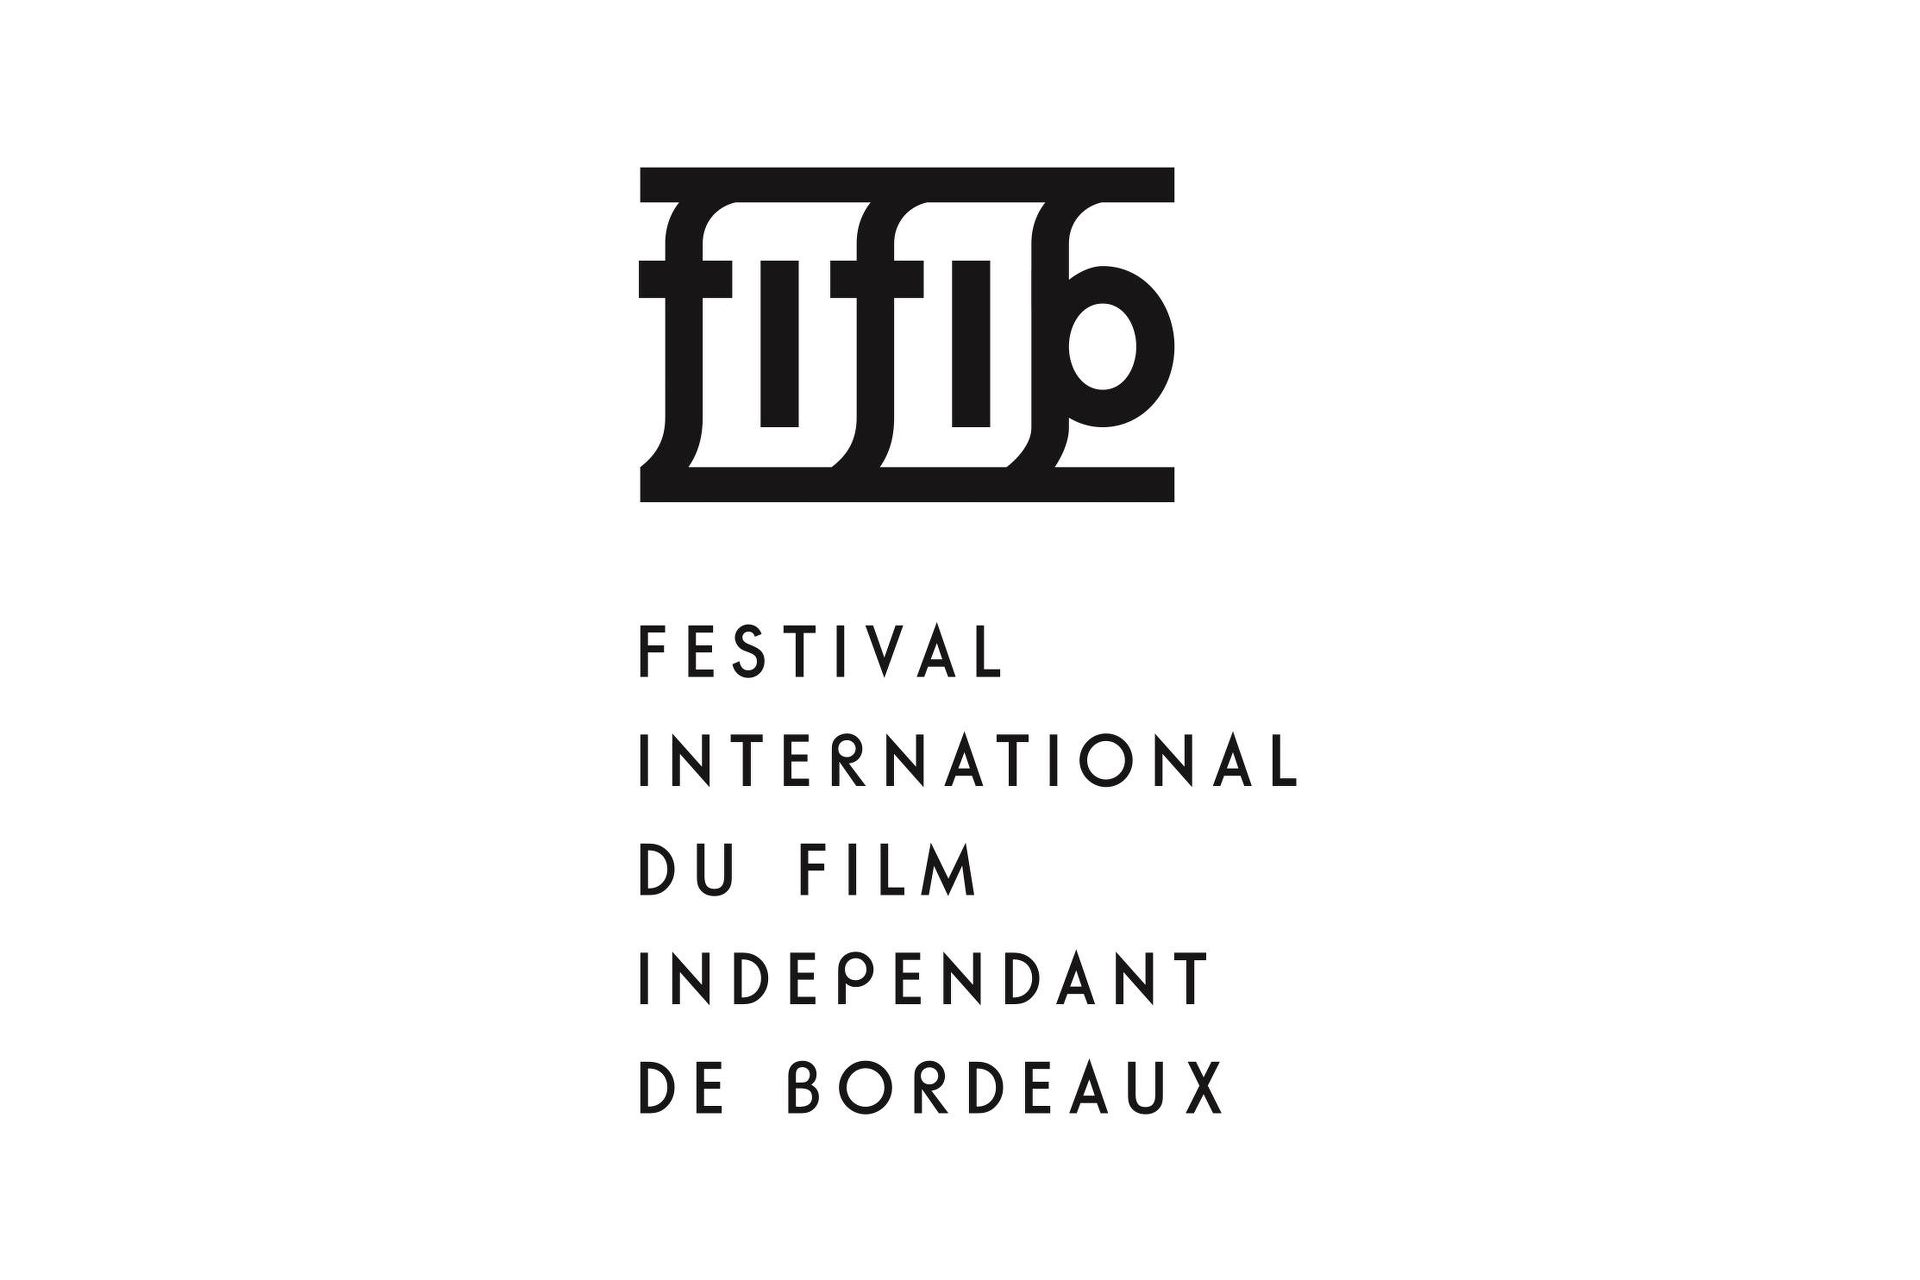 FIFIB (Festival International du Film Indépendant de Bordeaux)